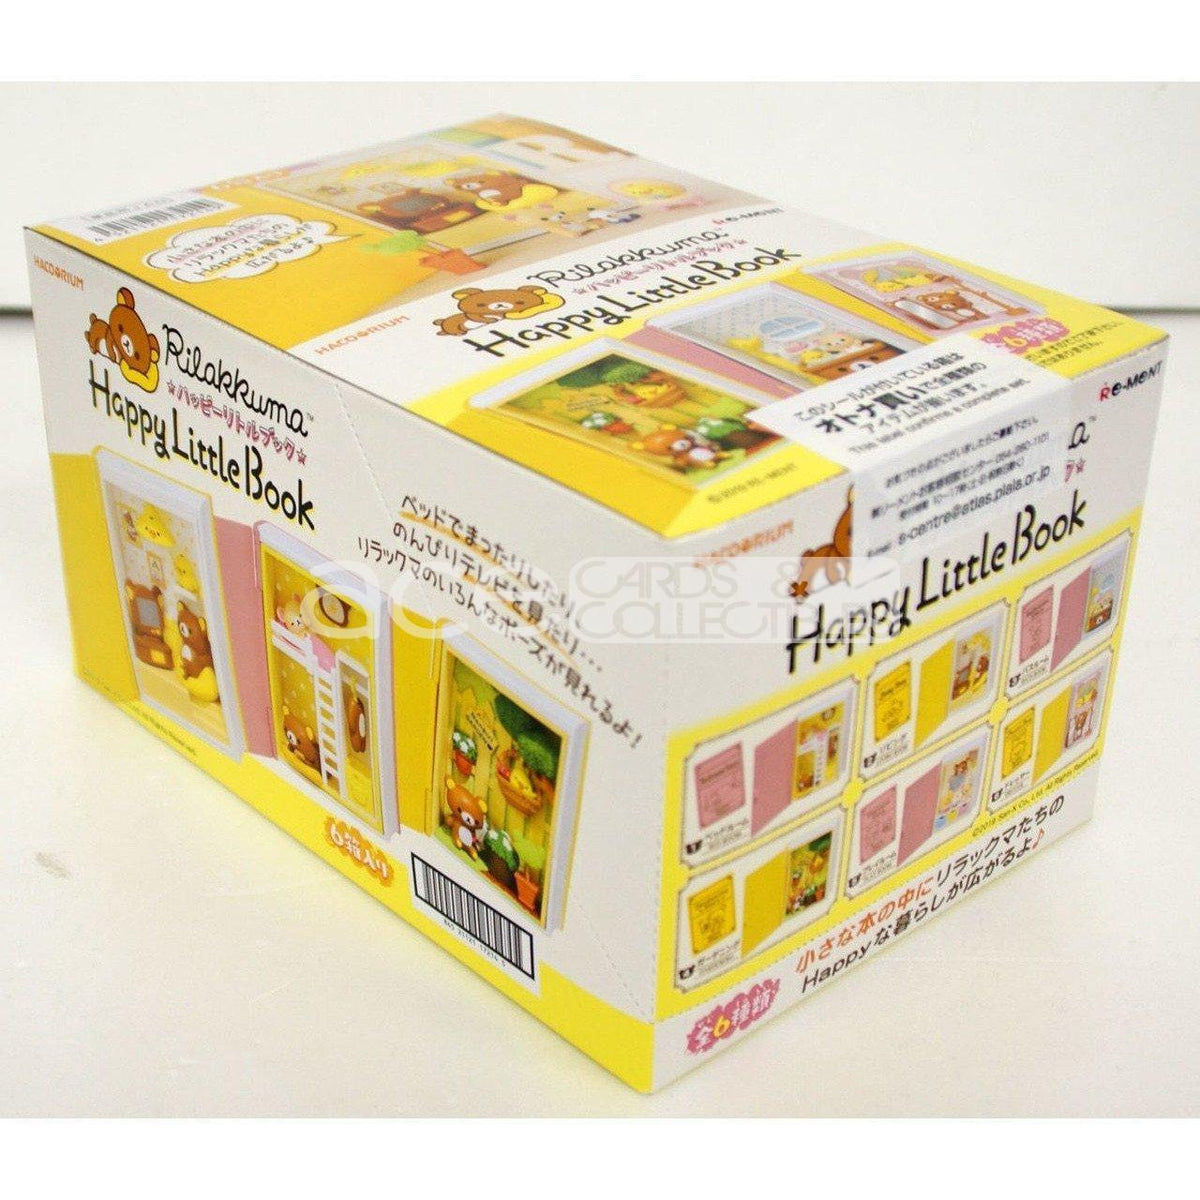 Re-Ment Hacorium Rilakkuma -Happy Little Book-Whole Box (Complete Set of 6)-Re-Ment-Ace Cards &amp; Collectibles